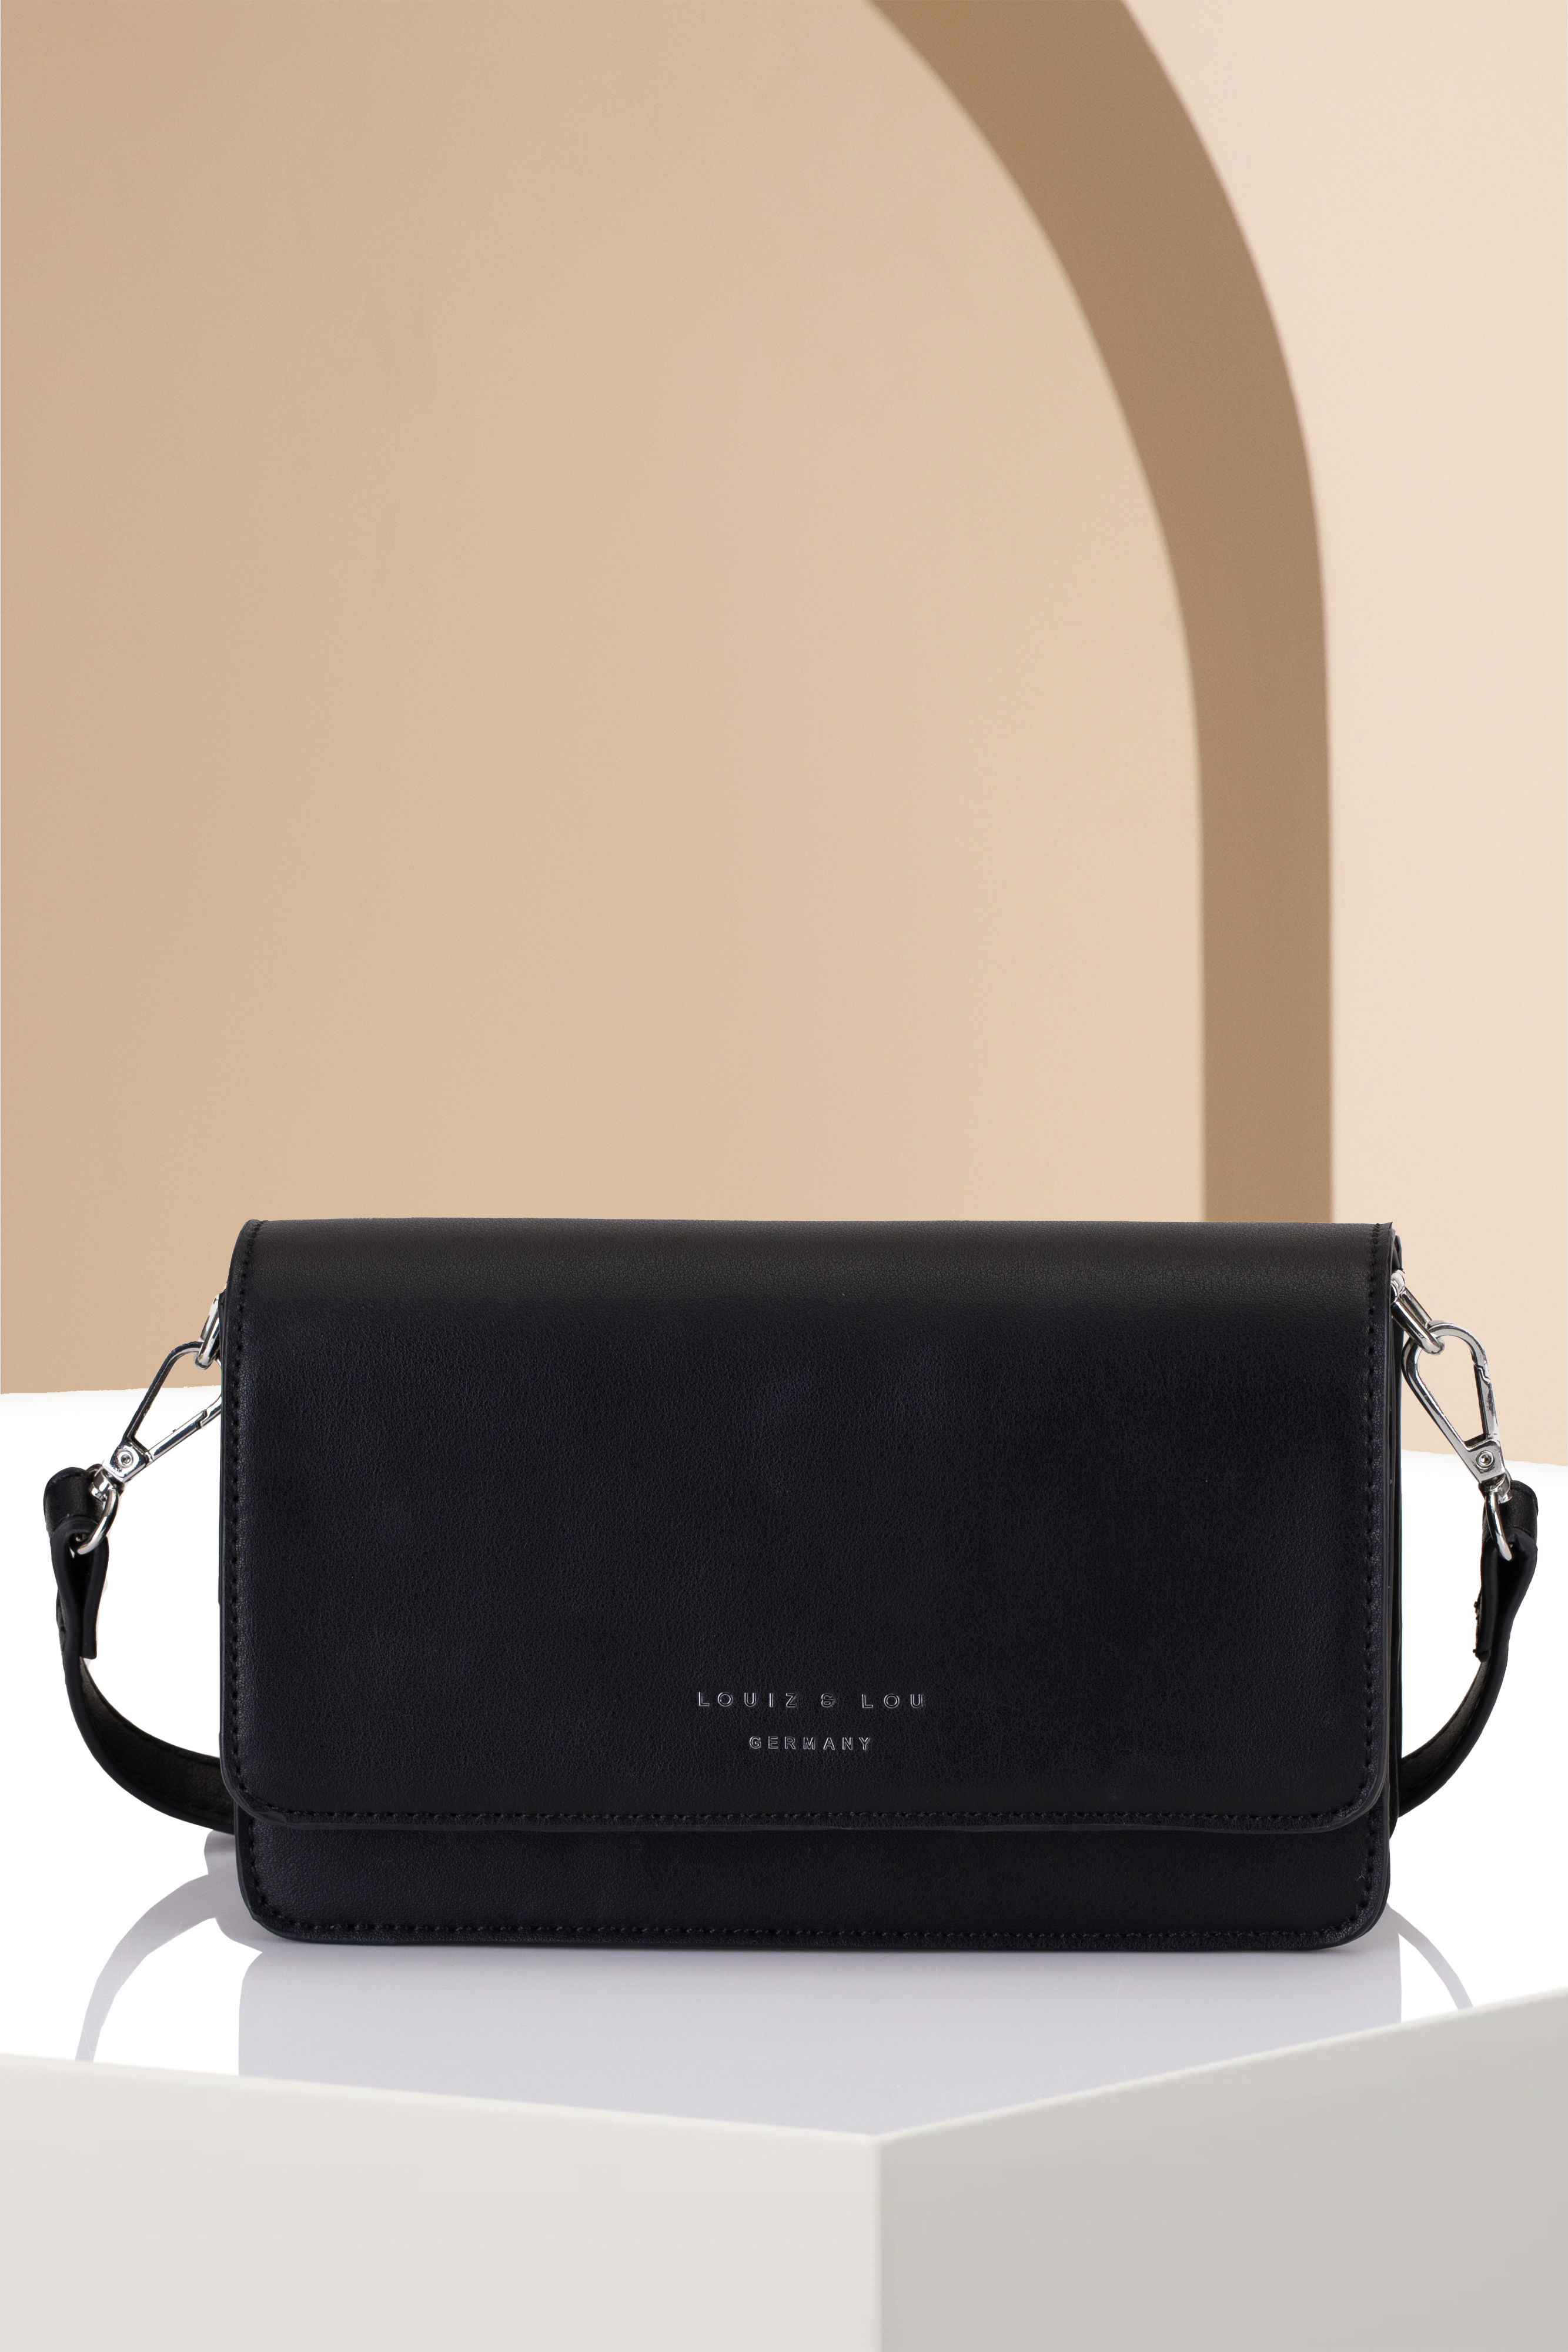 Louiz&Lou Überschlagtasche Umhängetasche Lara mit Kette in schwarz - 2840-60